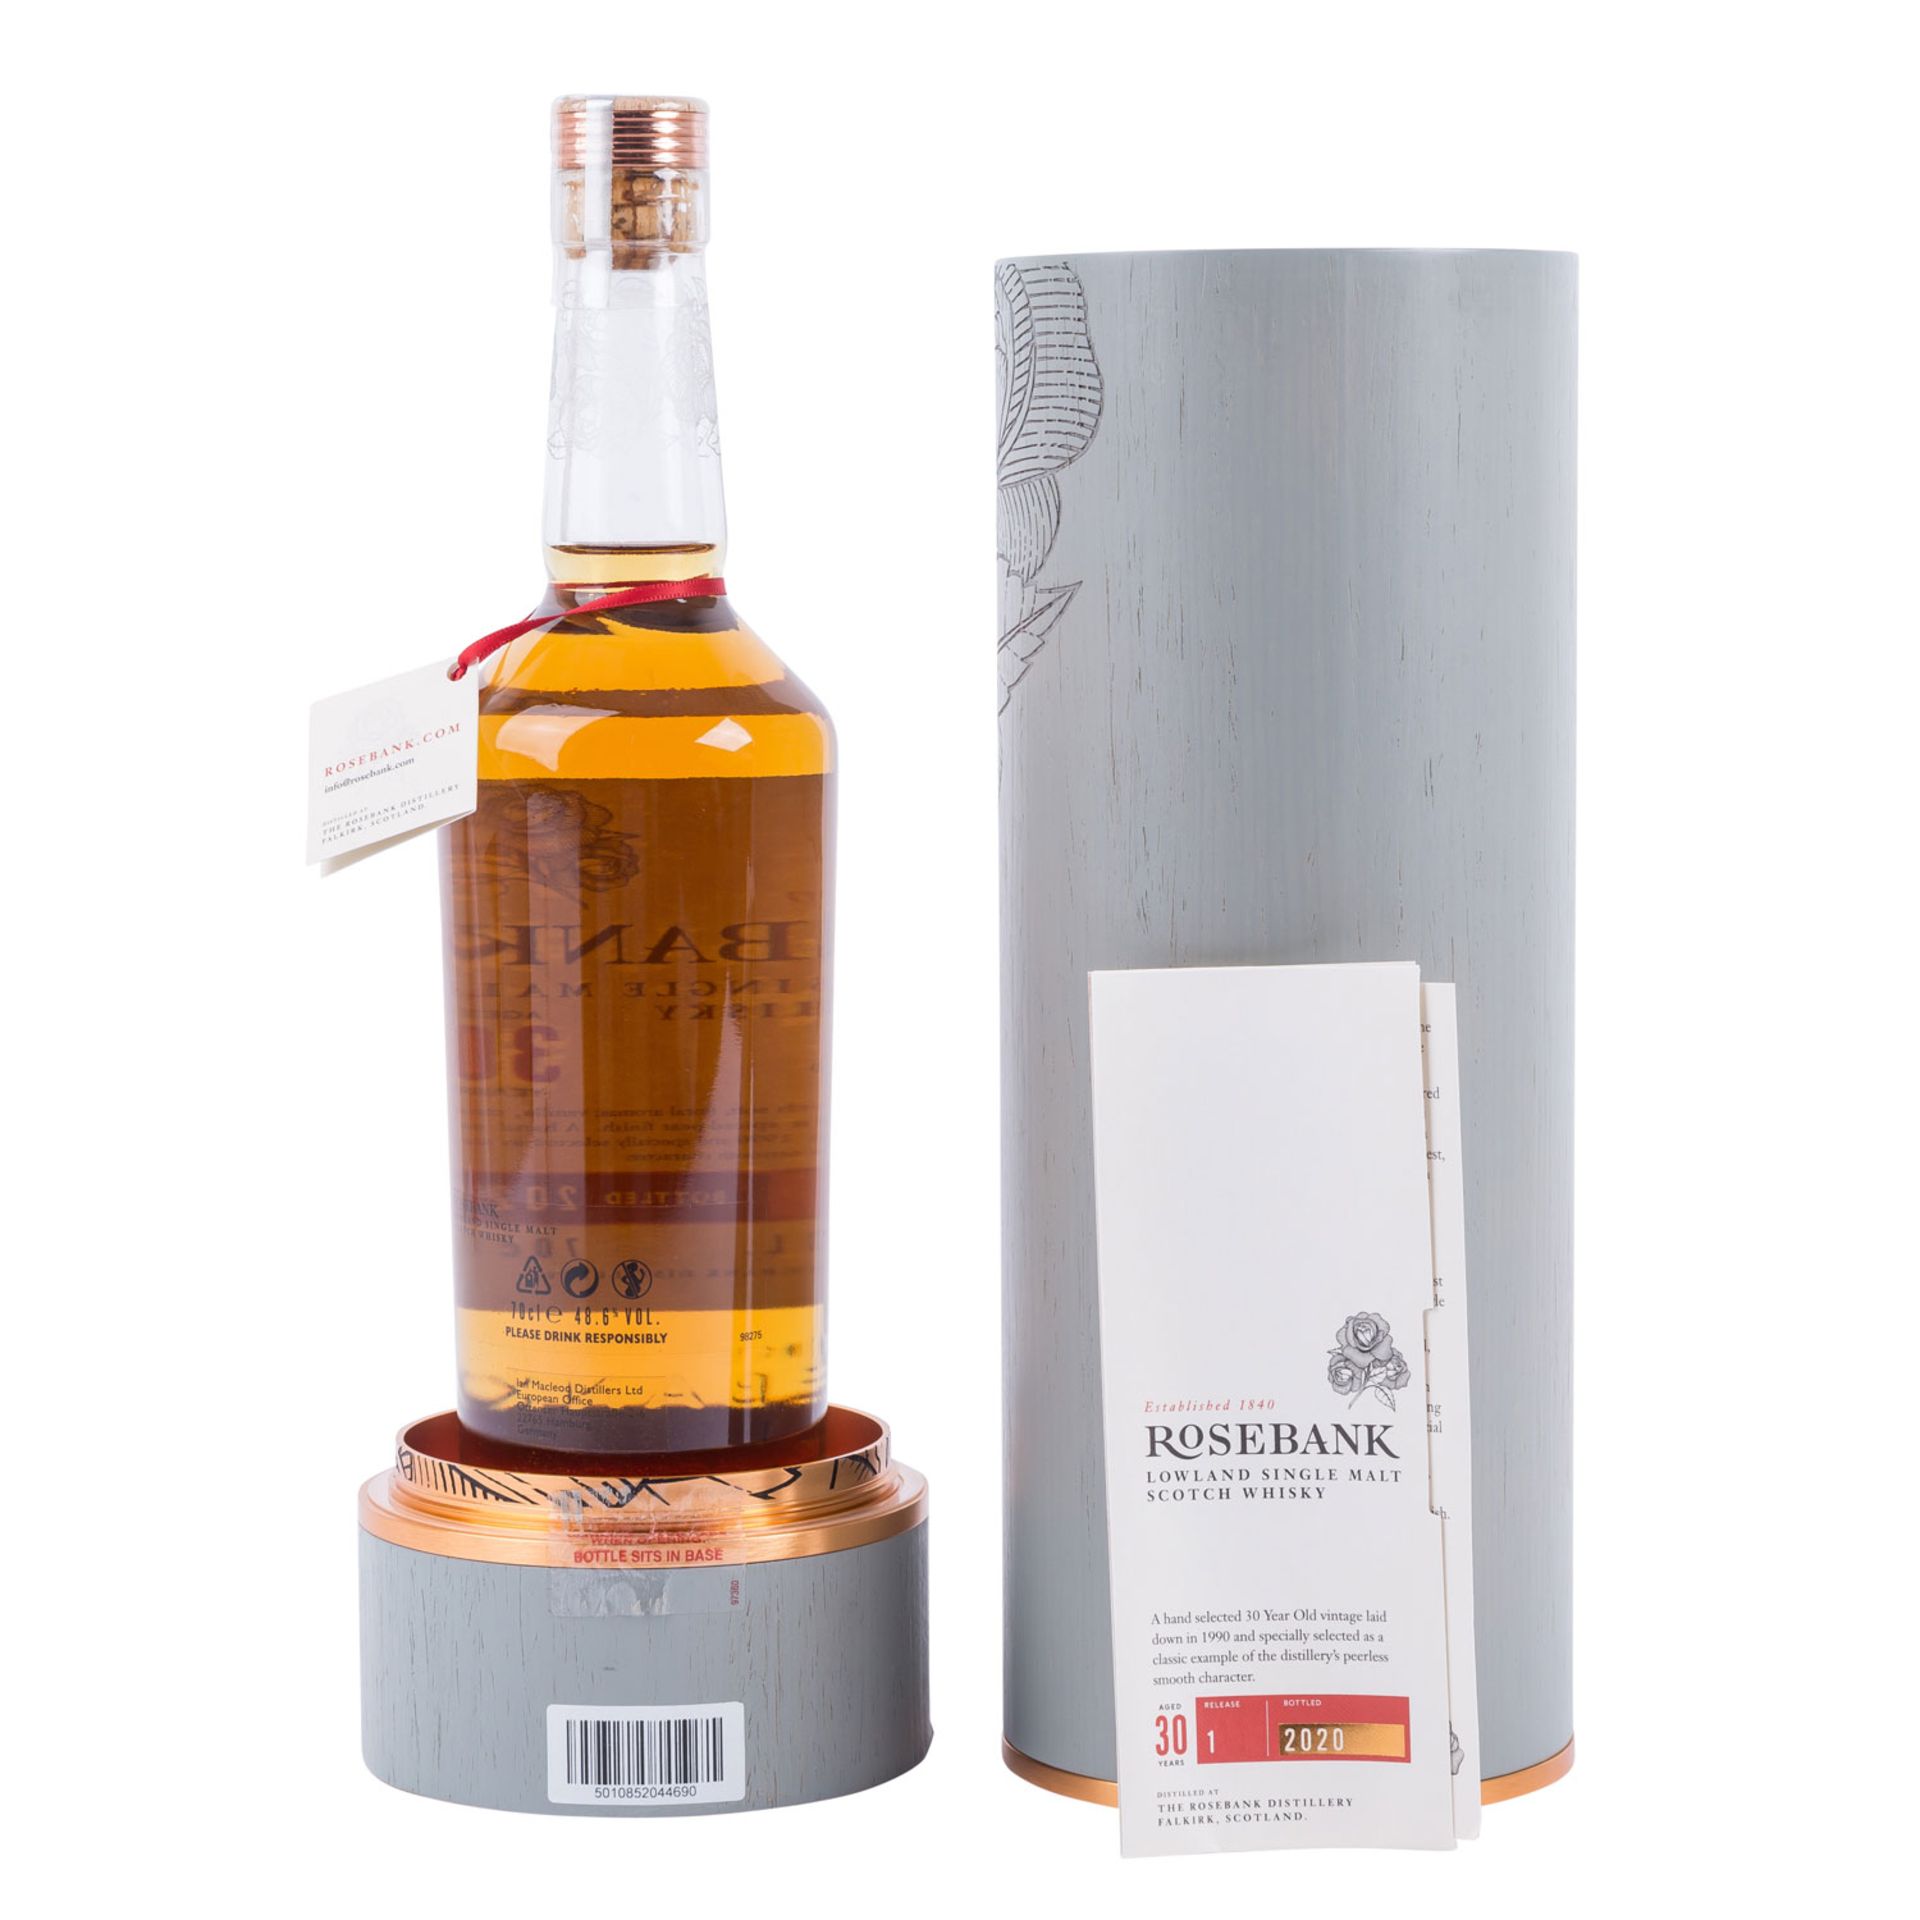 ROSEBANK 'Lowland Single Malt Scotch Whisky 'Aged 30 Years' 1990 - Image 3 of 4